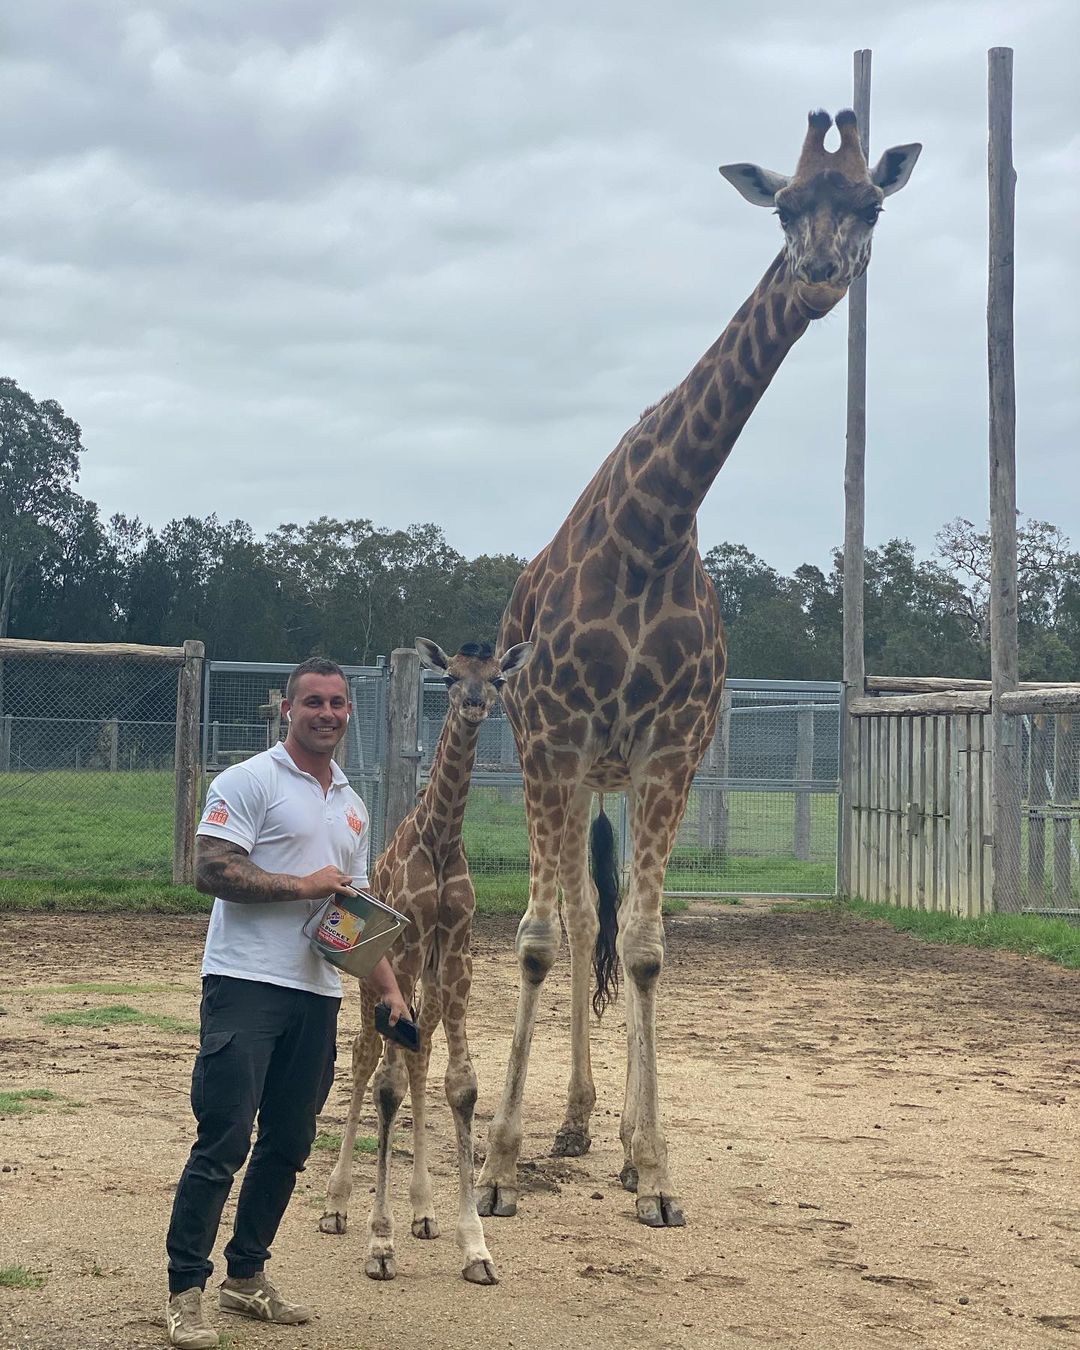 Смотритель зоопарка прославился в Instagram, благодаря снимкам с животными